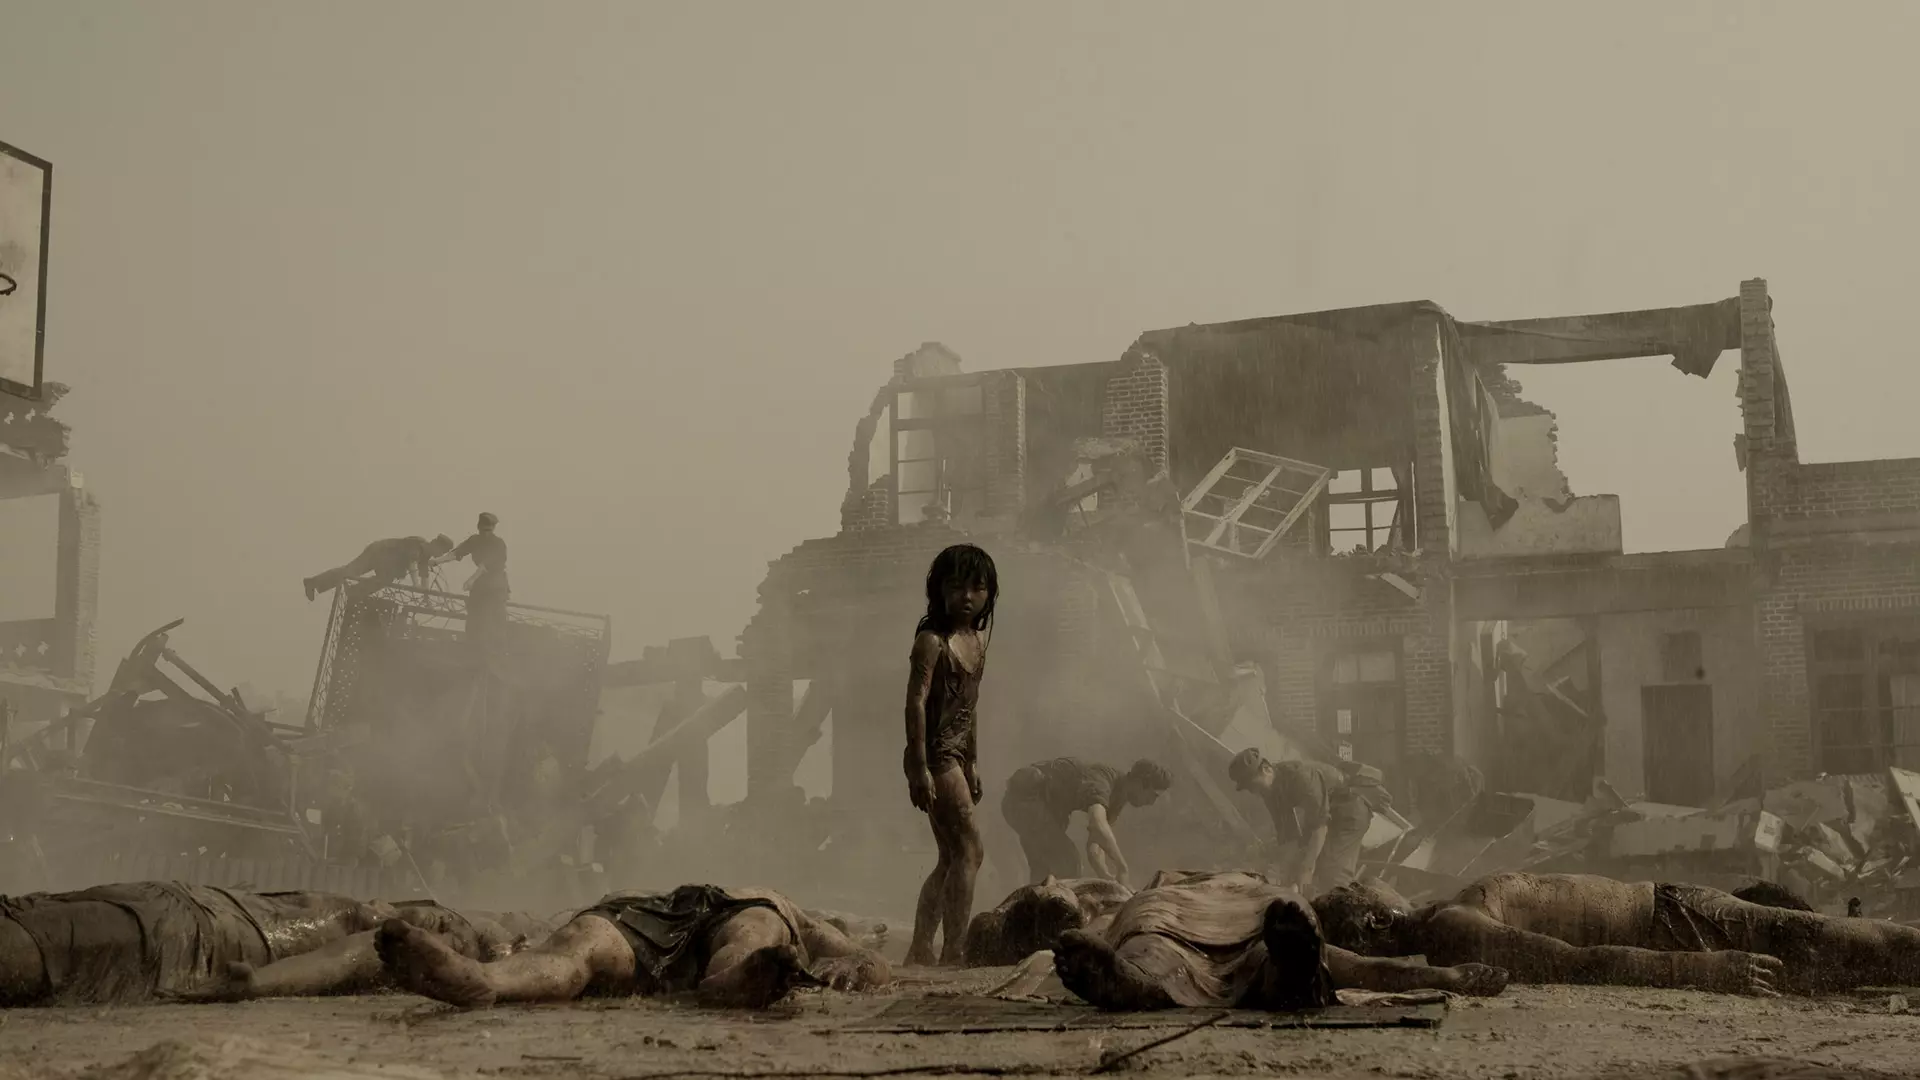 دختر در میان زلزله در فیلم پس لرزه